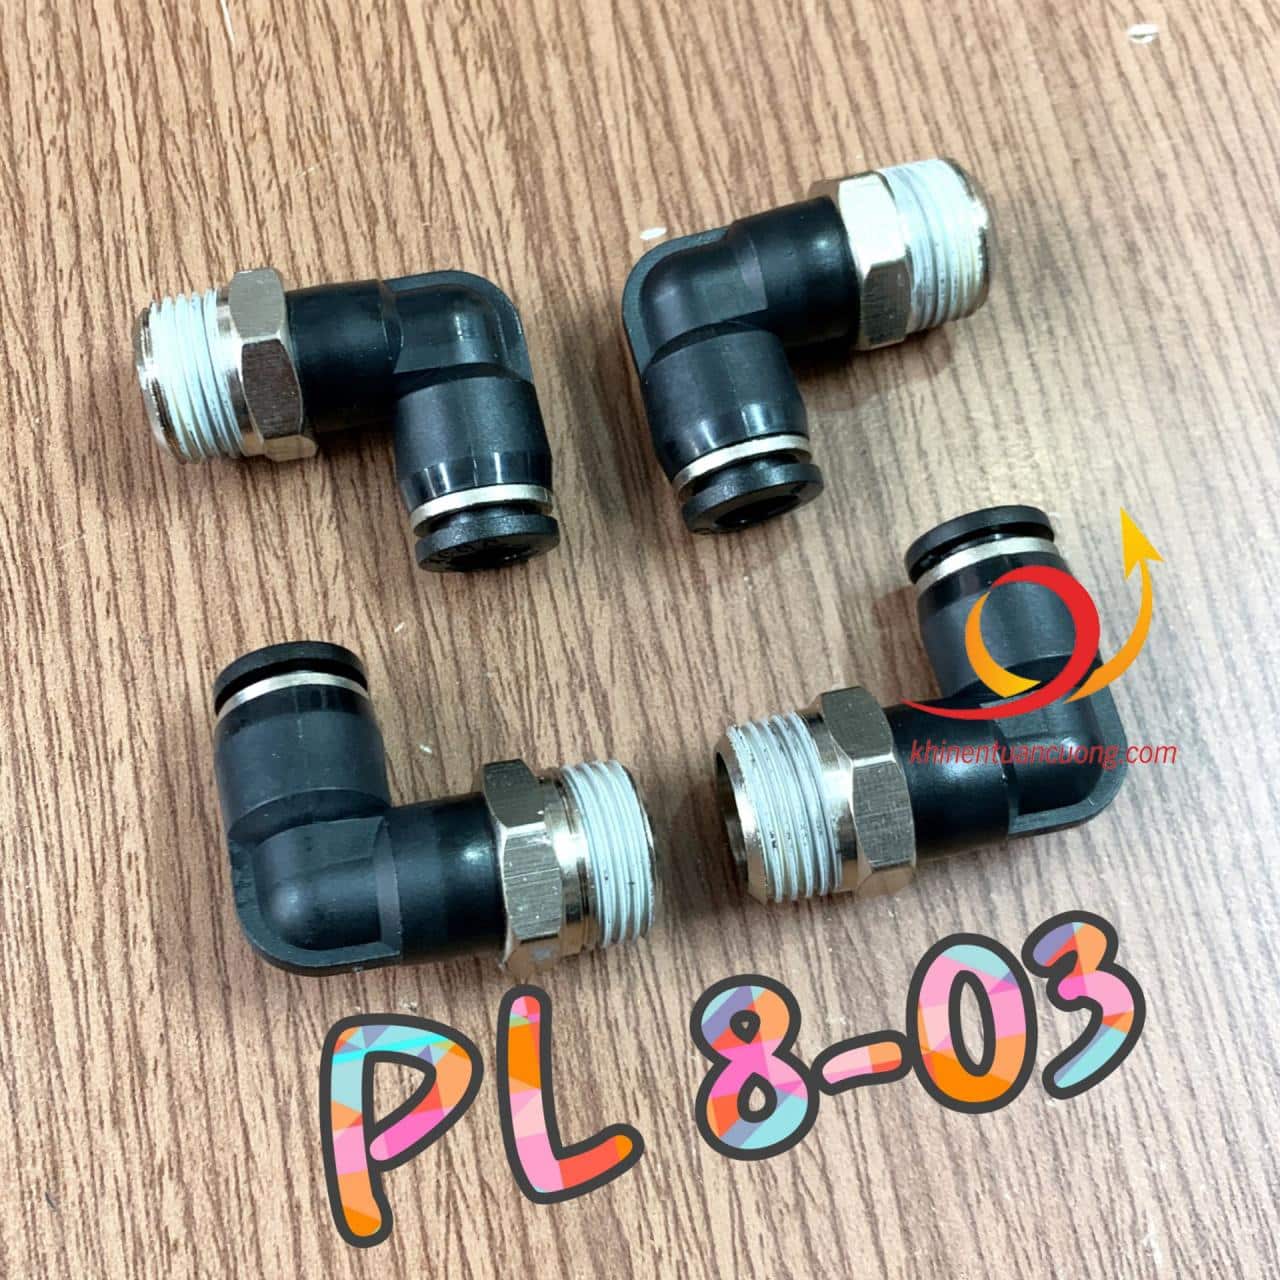 Co góc PL8-03 nghĩa là đường kính ren PT3/8 inch hệ Anh tương đương 16~17mm và cắm nhanh dây hơi phi 8 (tức PU8x5mm)